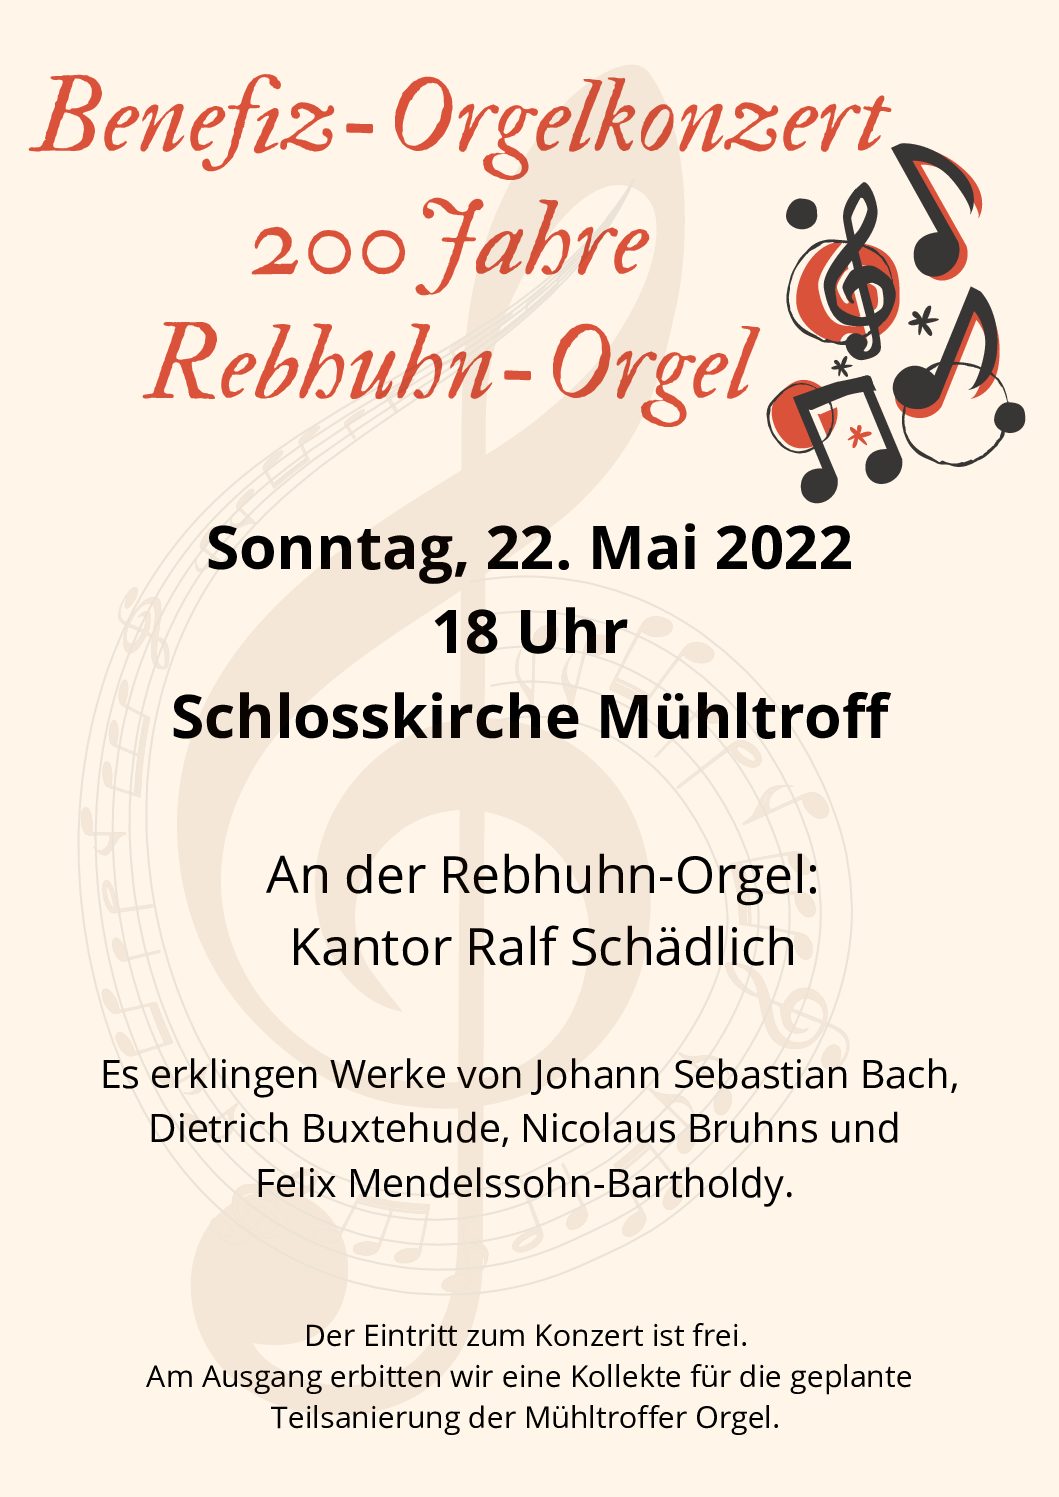 Benefiz-Orgelkonzert 200 Jahre Rebhuhn-Orgel